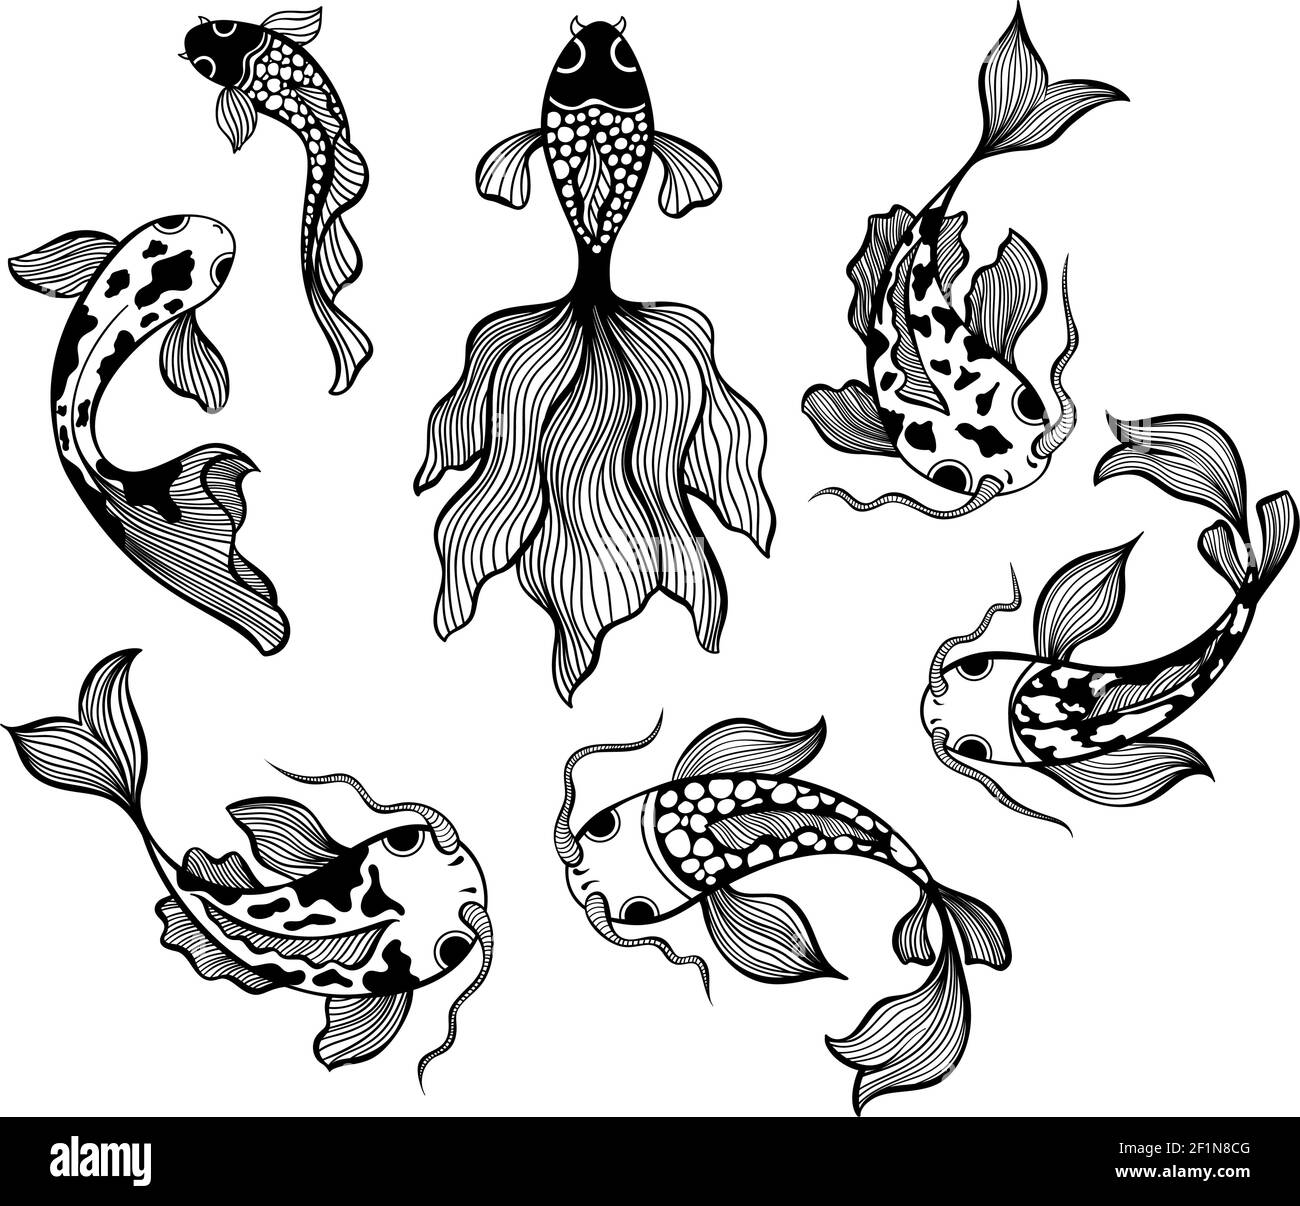 Ensemble de poissons japonais, carpe koi dessin de ligne illustrations vectorielles Illustration de Vecteur